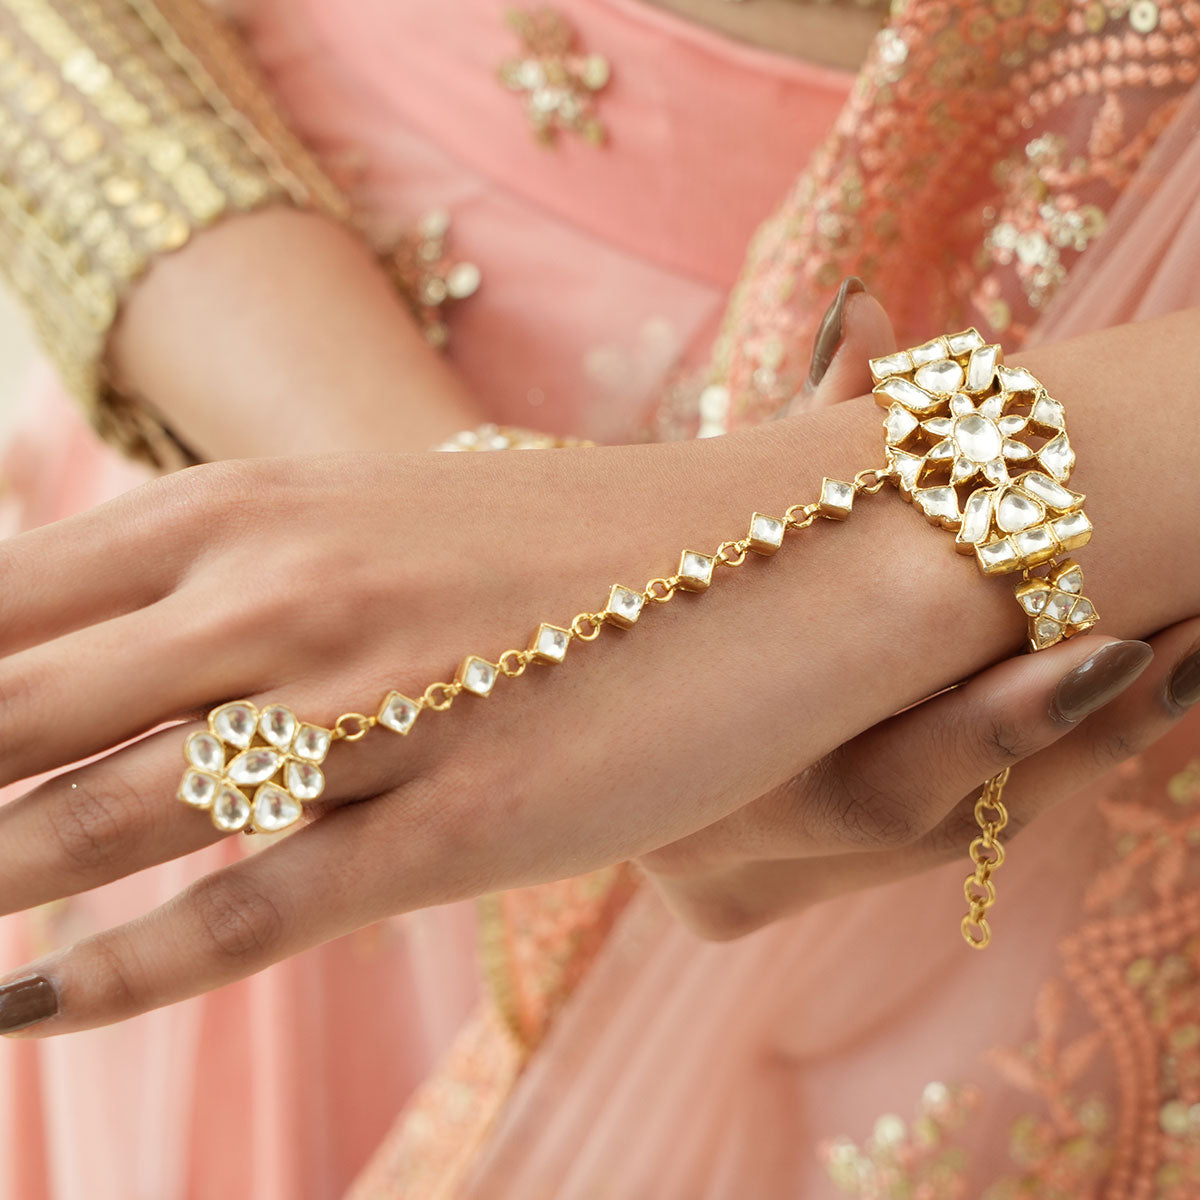 Sasha girls set of 2 white gold-plated kundan ring bracelet - Sasha -  4164734